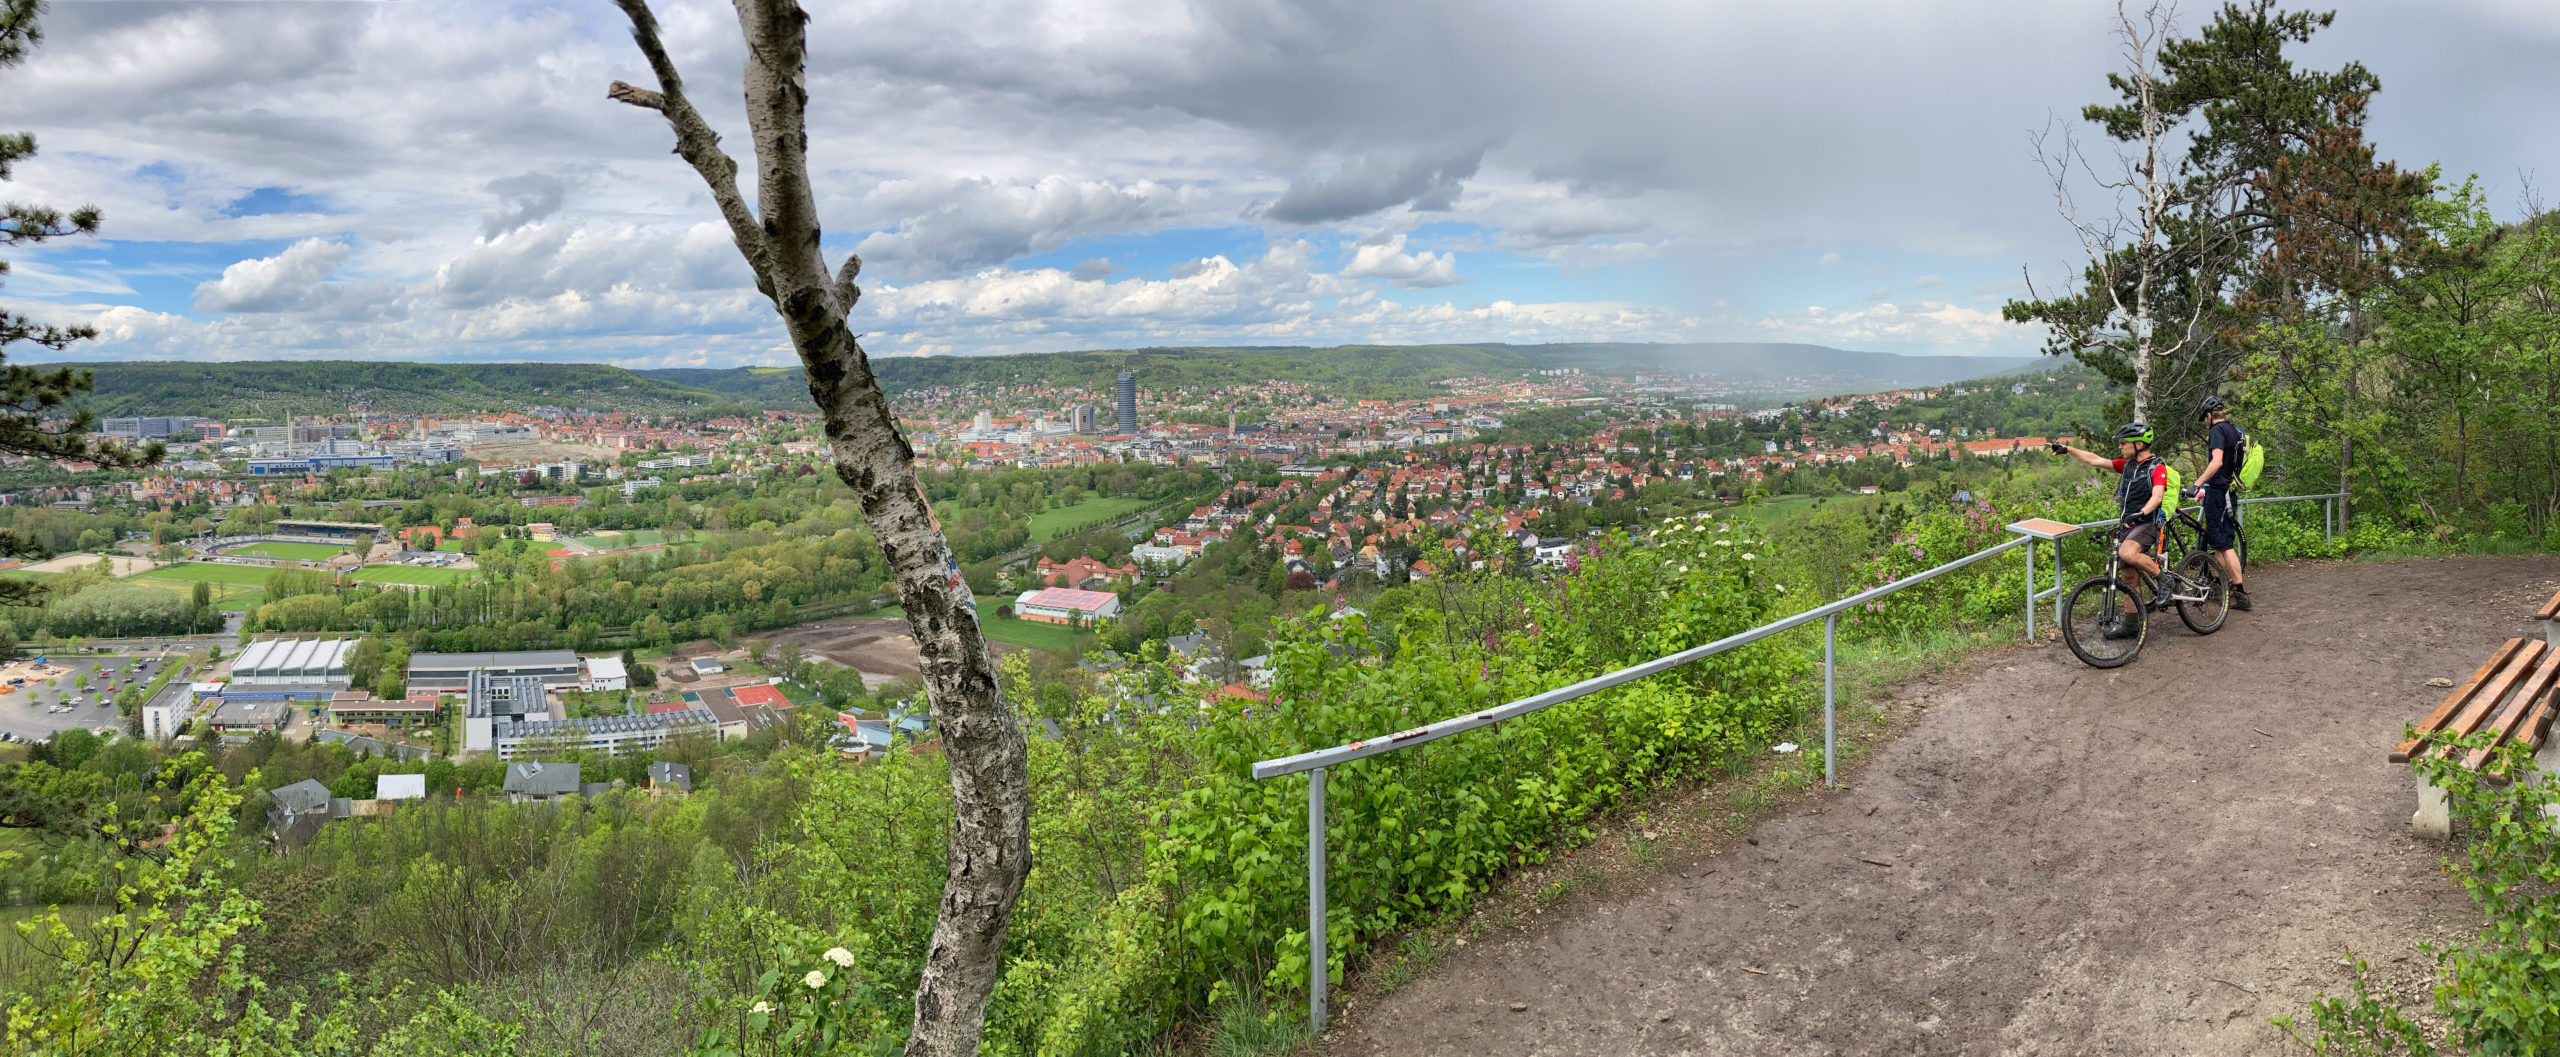 toller Ausblick auf Jena zzgl. sich ankündigenden Regenschauer